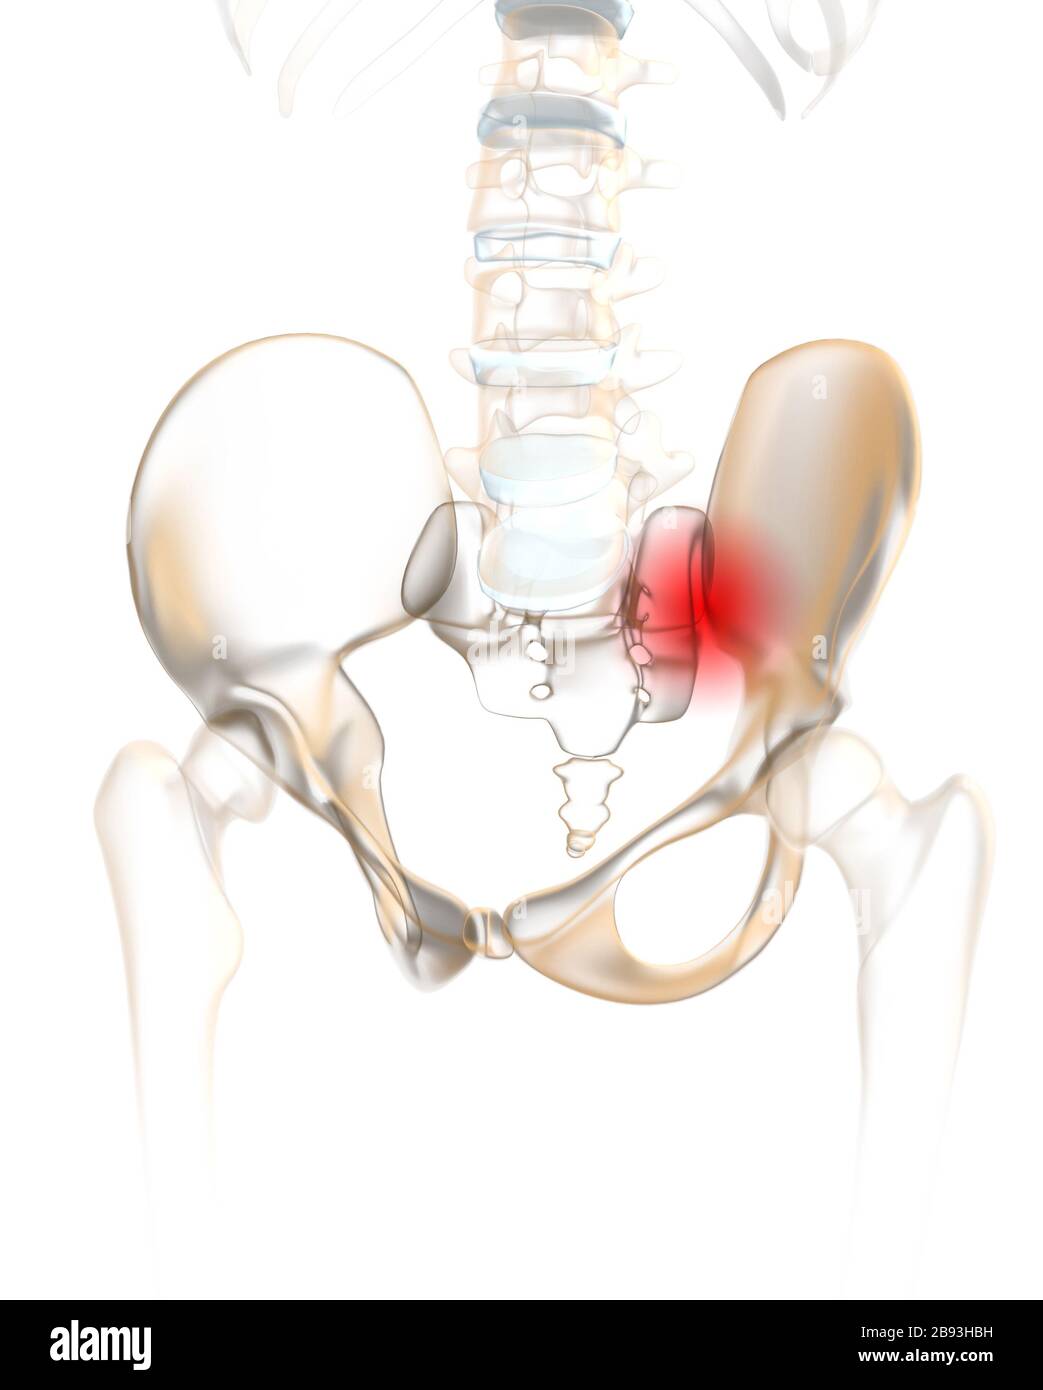 Columna vertebral humana con pelvis y articulación sacroilíaca dolorosa Foto de stock